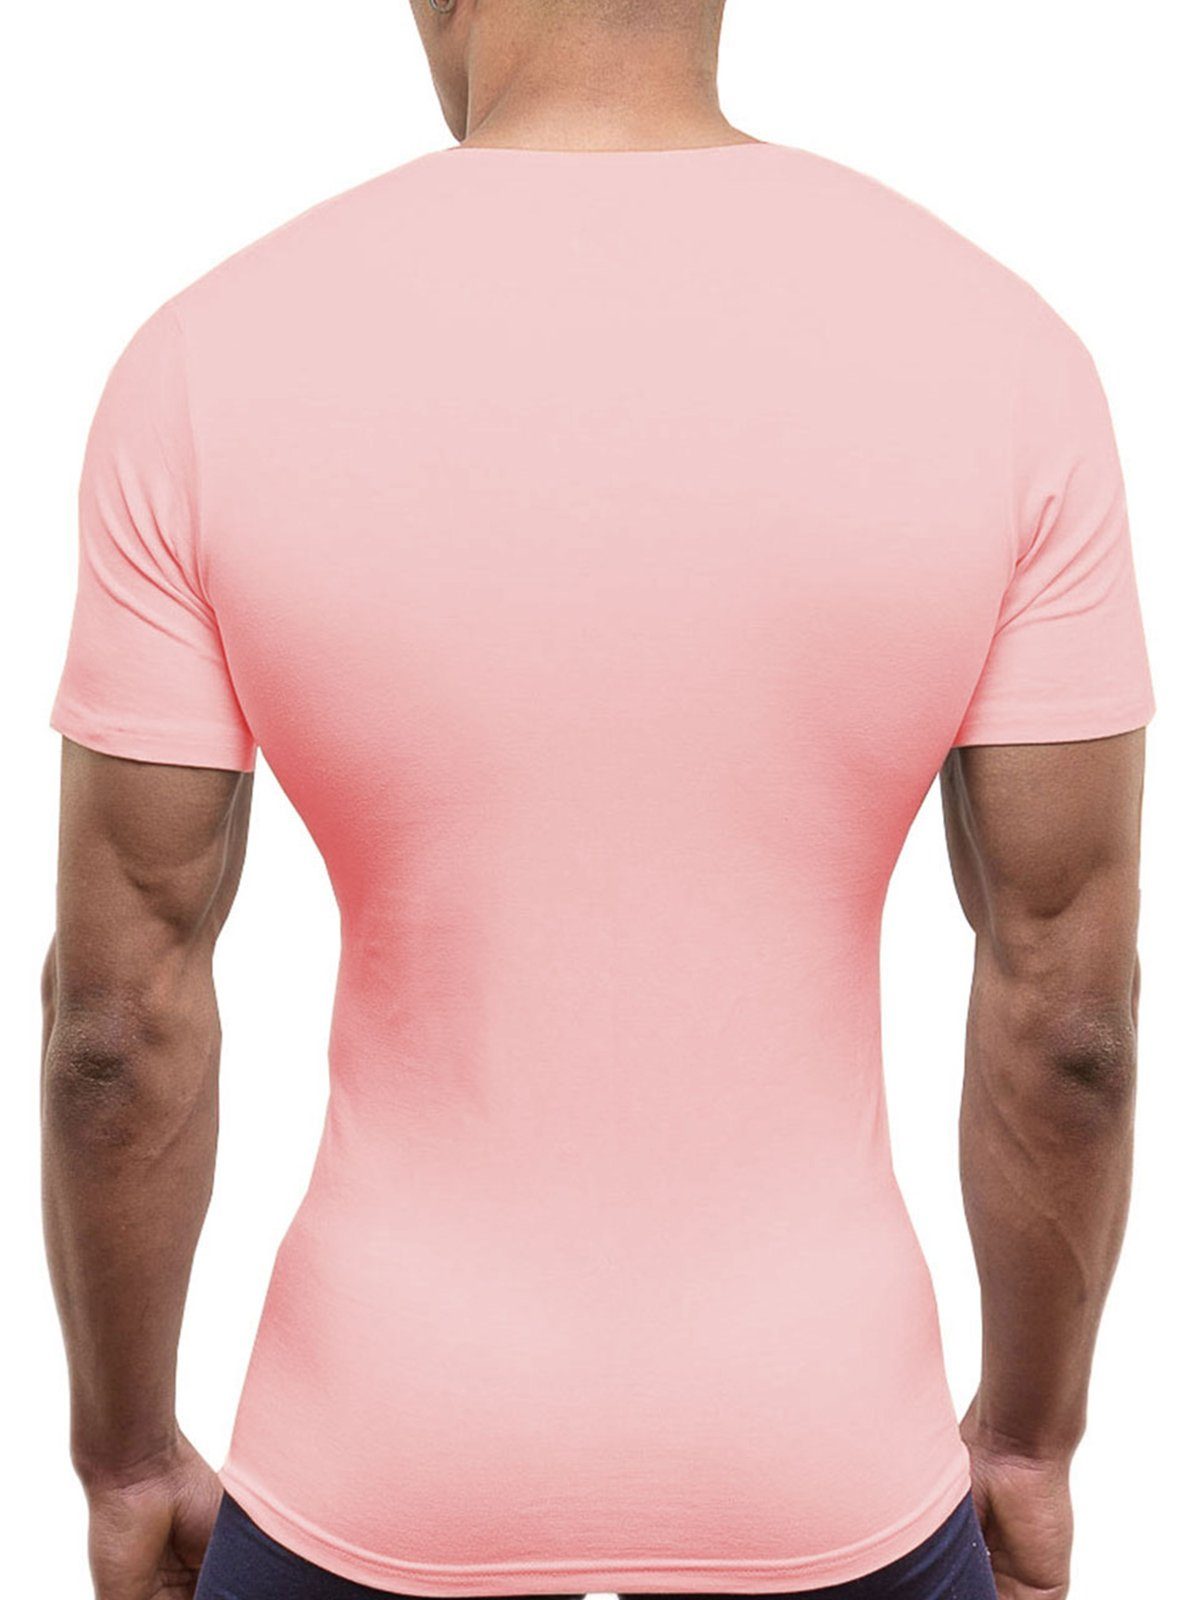 Doreanse Underwear V-Shirt Deep Rosa V-Ausschnitt DA2820 Business Unterhemd Pink V-Neck T-Shirt